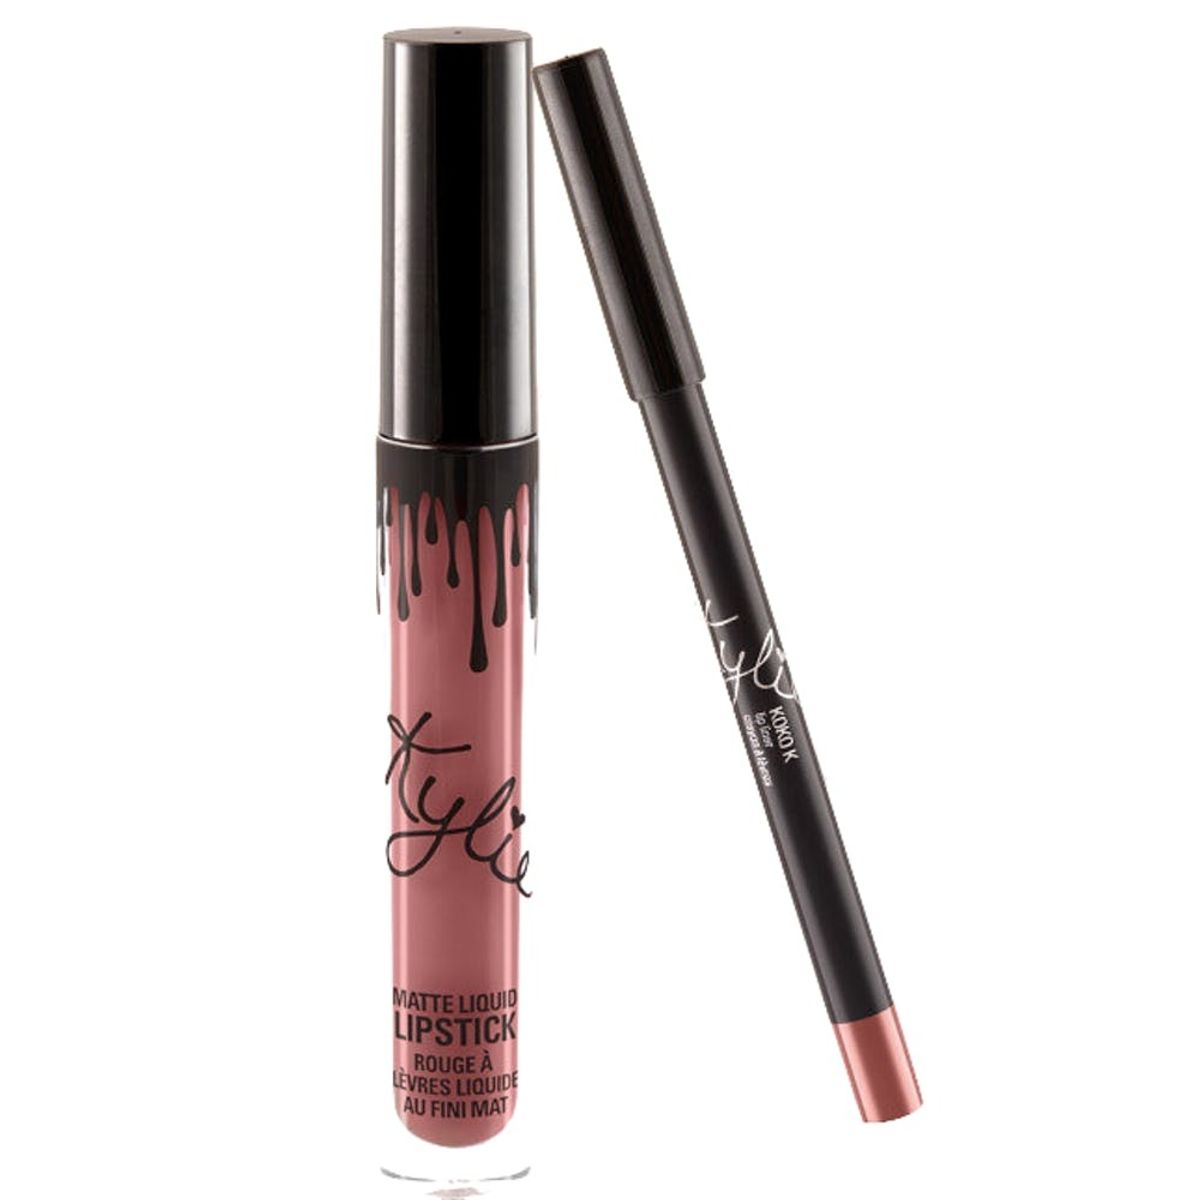 This Beauty Blogger Revealed Kylie Jenner’s Overpriced Lip Kit Formula Secret